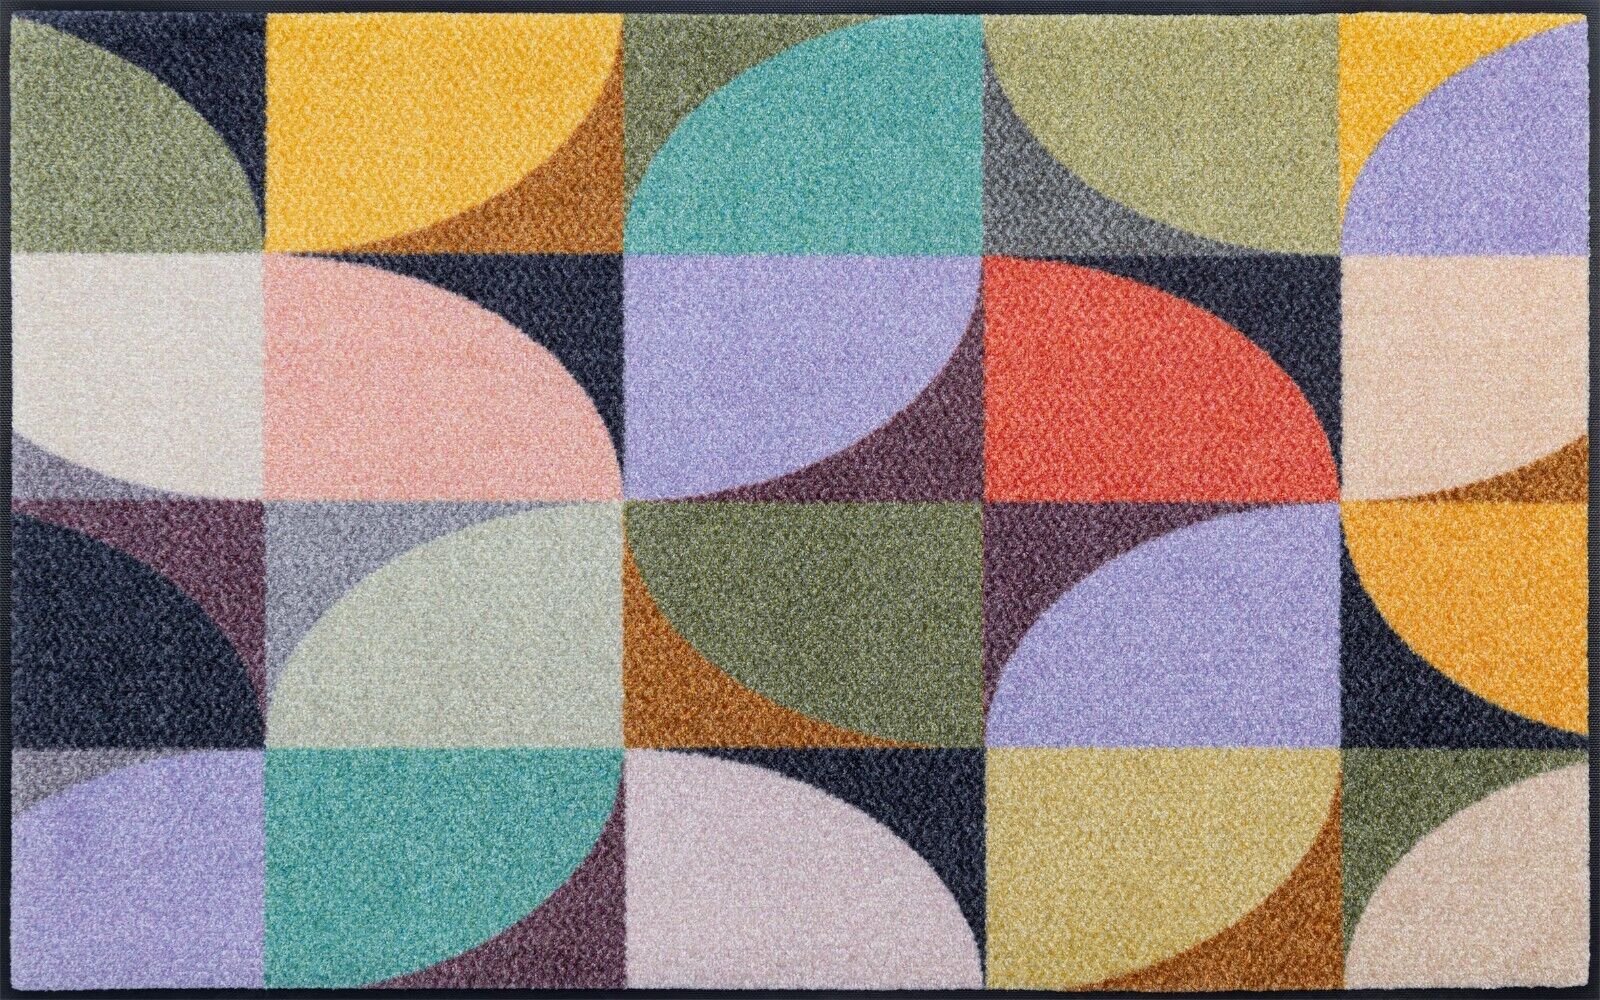 Fußmatte KLEEN-TEX wash + dry Design Colour Moments in 3 Größen lieferbar |  eBay